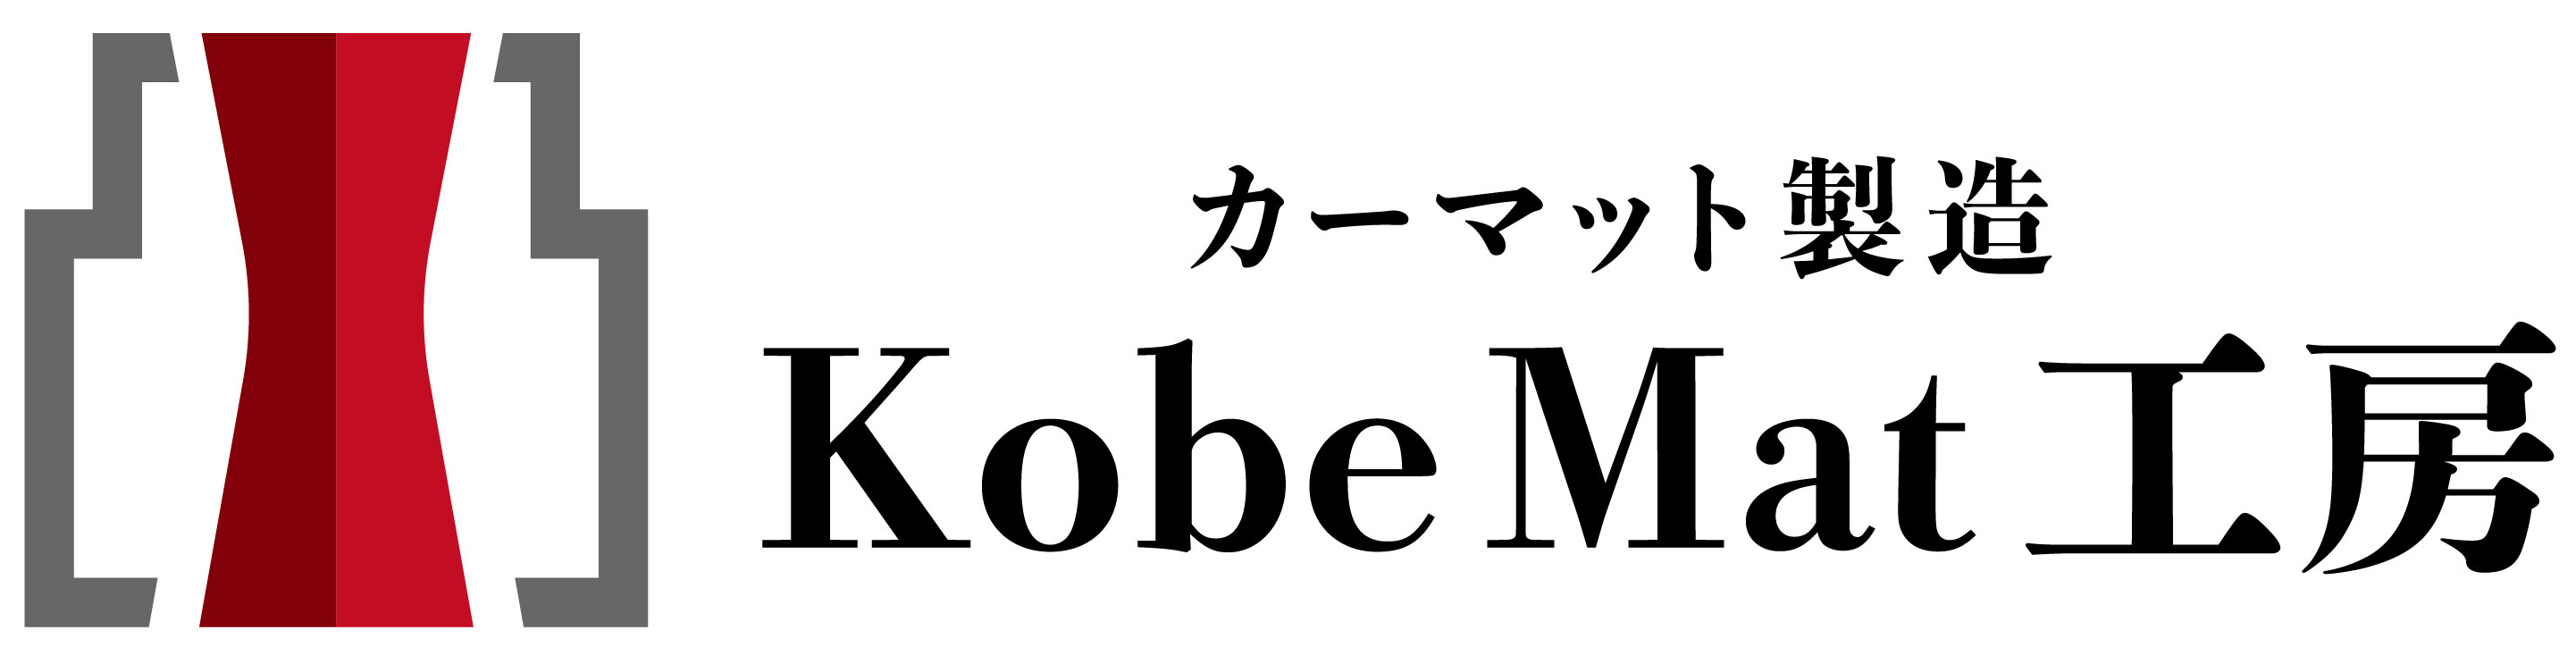 神戸マット工房 ロゴ